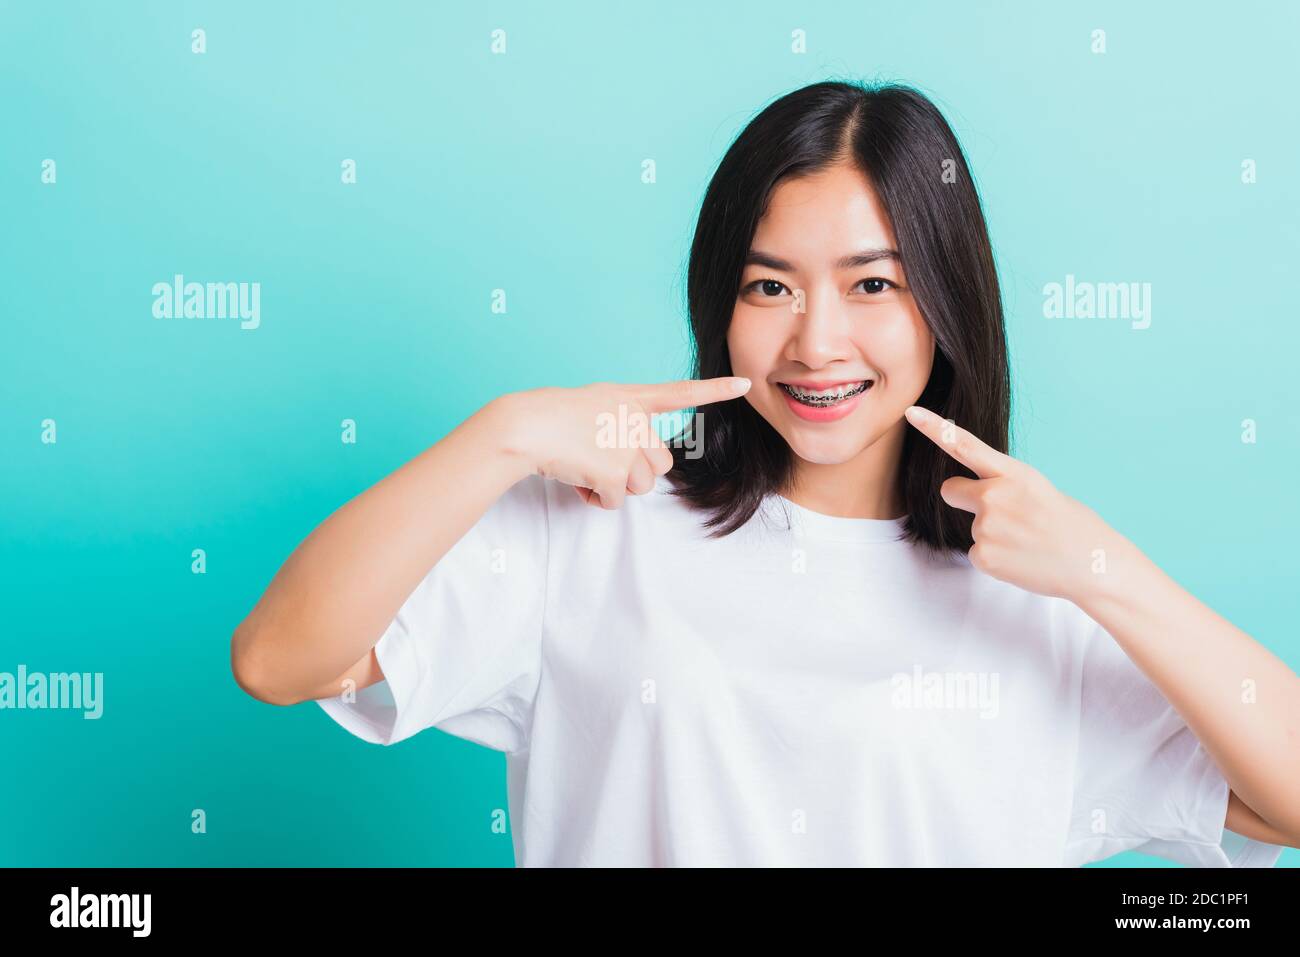 Portrait von Asian teen schöne junge Frau Lächeln haben Zahnspangen auf den Zähnen Lachpunkt Finger ihren Mund, Studio erschossen auf einem blauen Hintergro isoliert Stockfoto